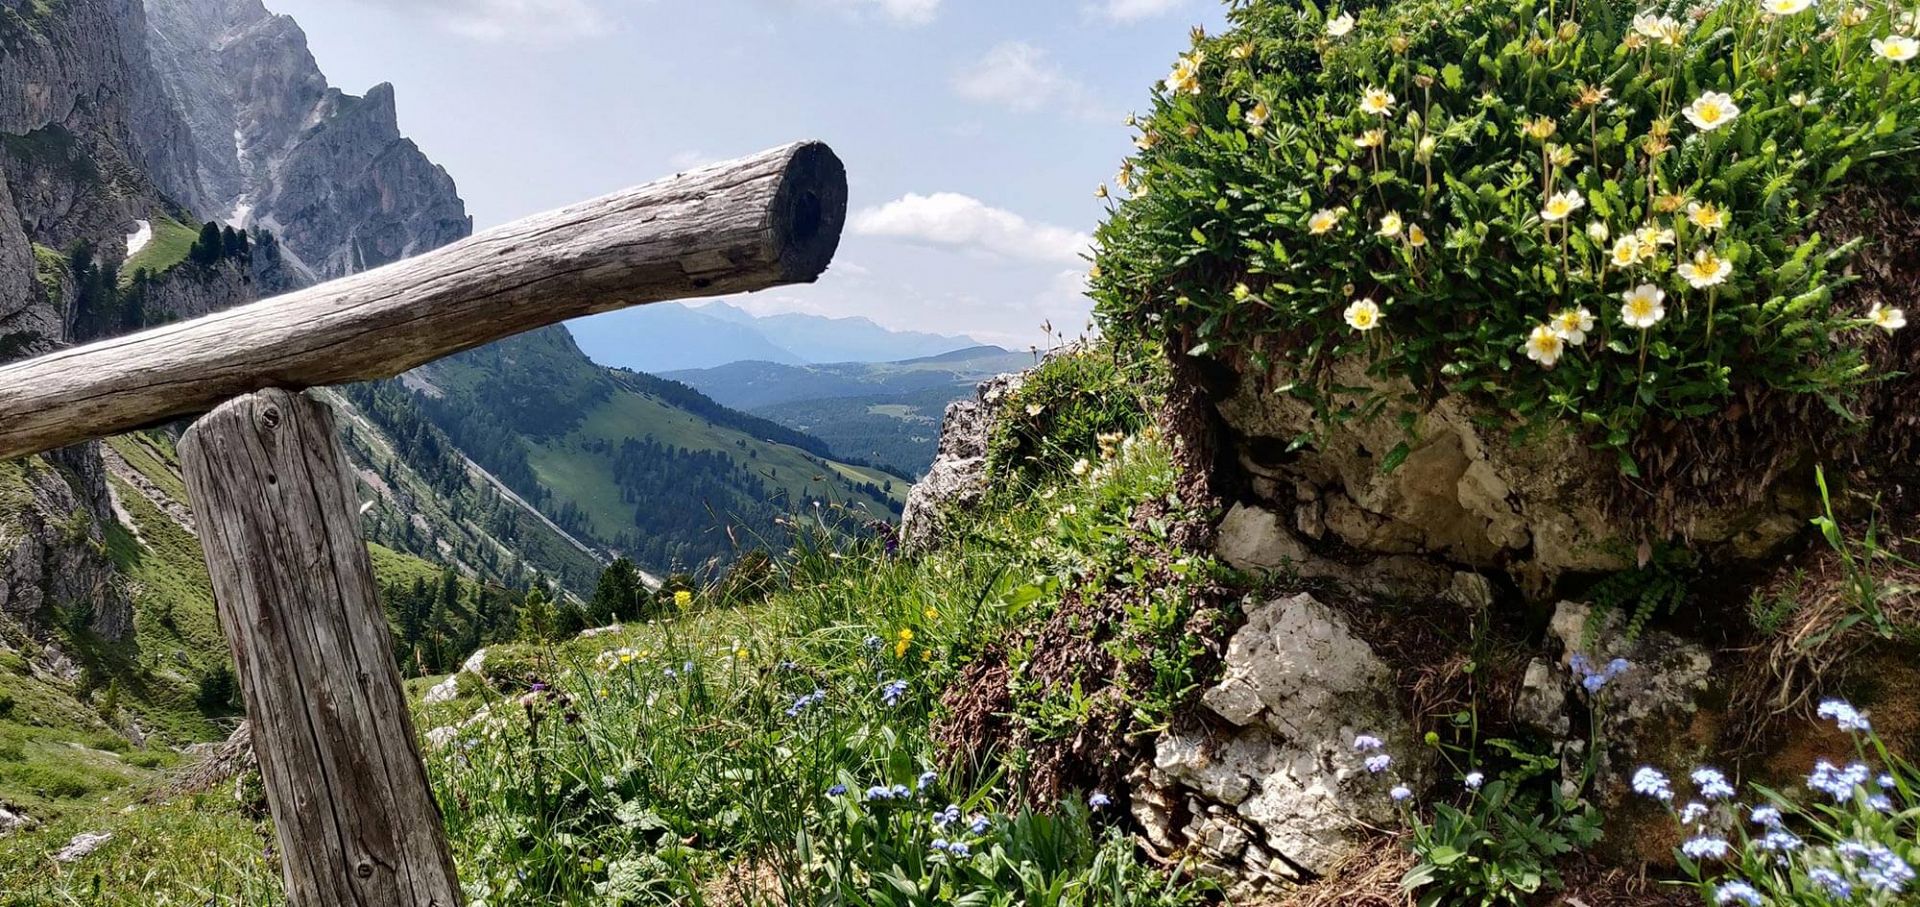 Primavera a Luson/Alto Adige: il risveglio naturale e seminari interessanti